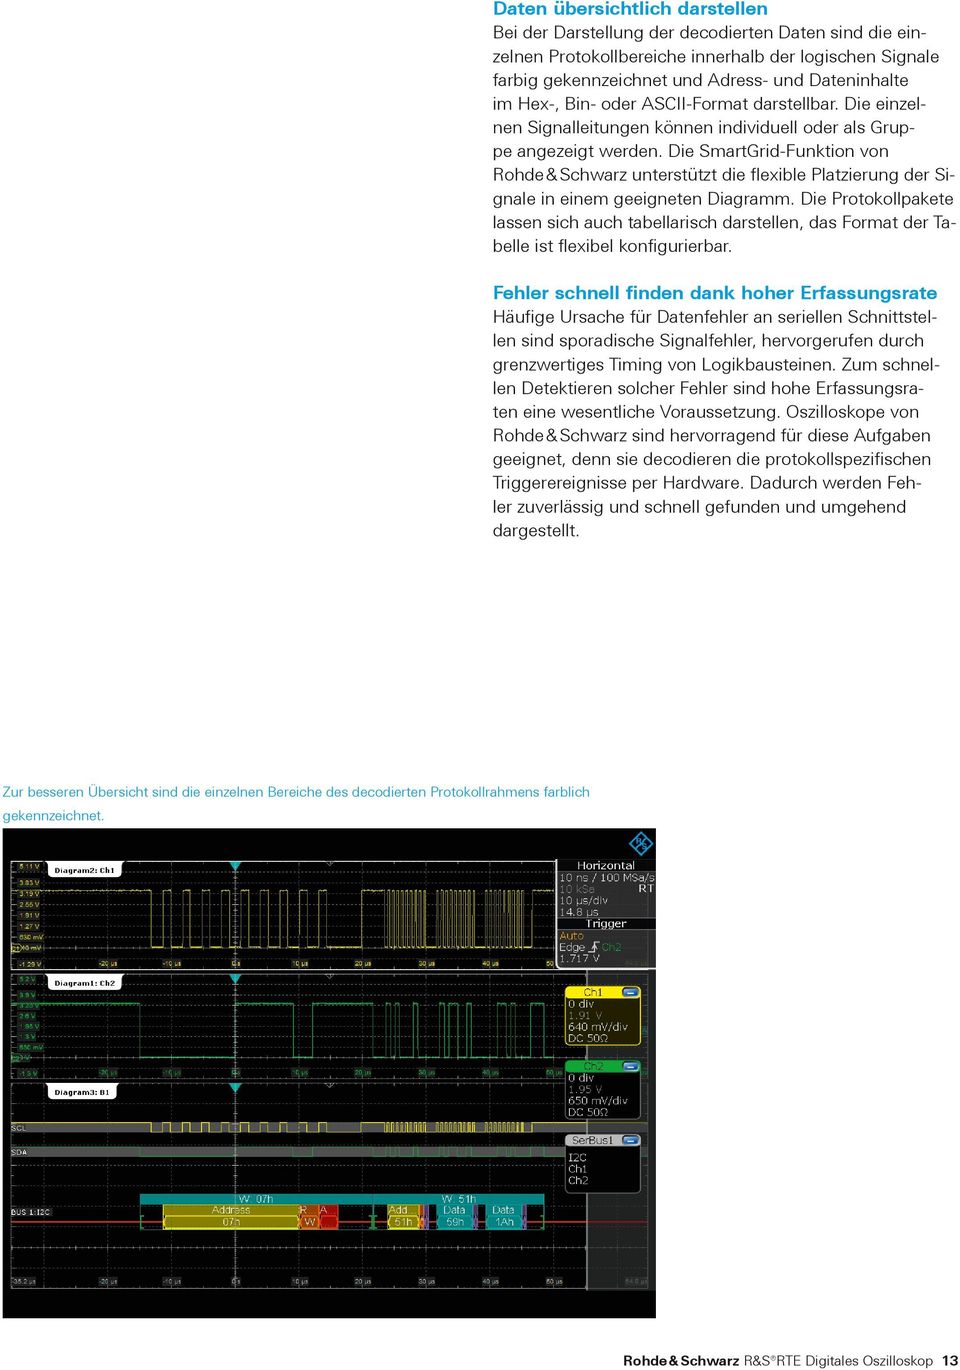 Die SmartGrid-Funktion von Rohde & Schwarz unterstützt die flexible Platzierung der Signale in einem geeigneten Diagramm.